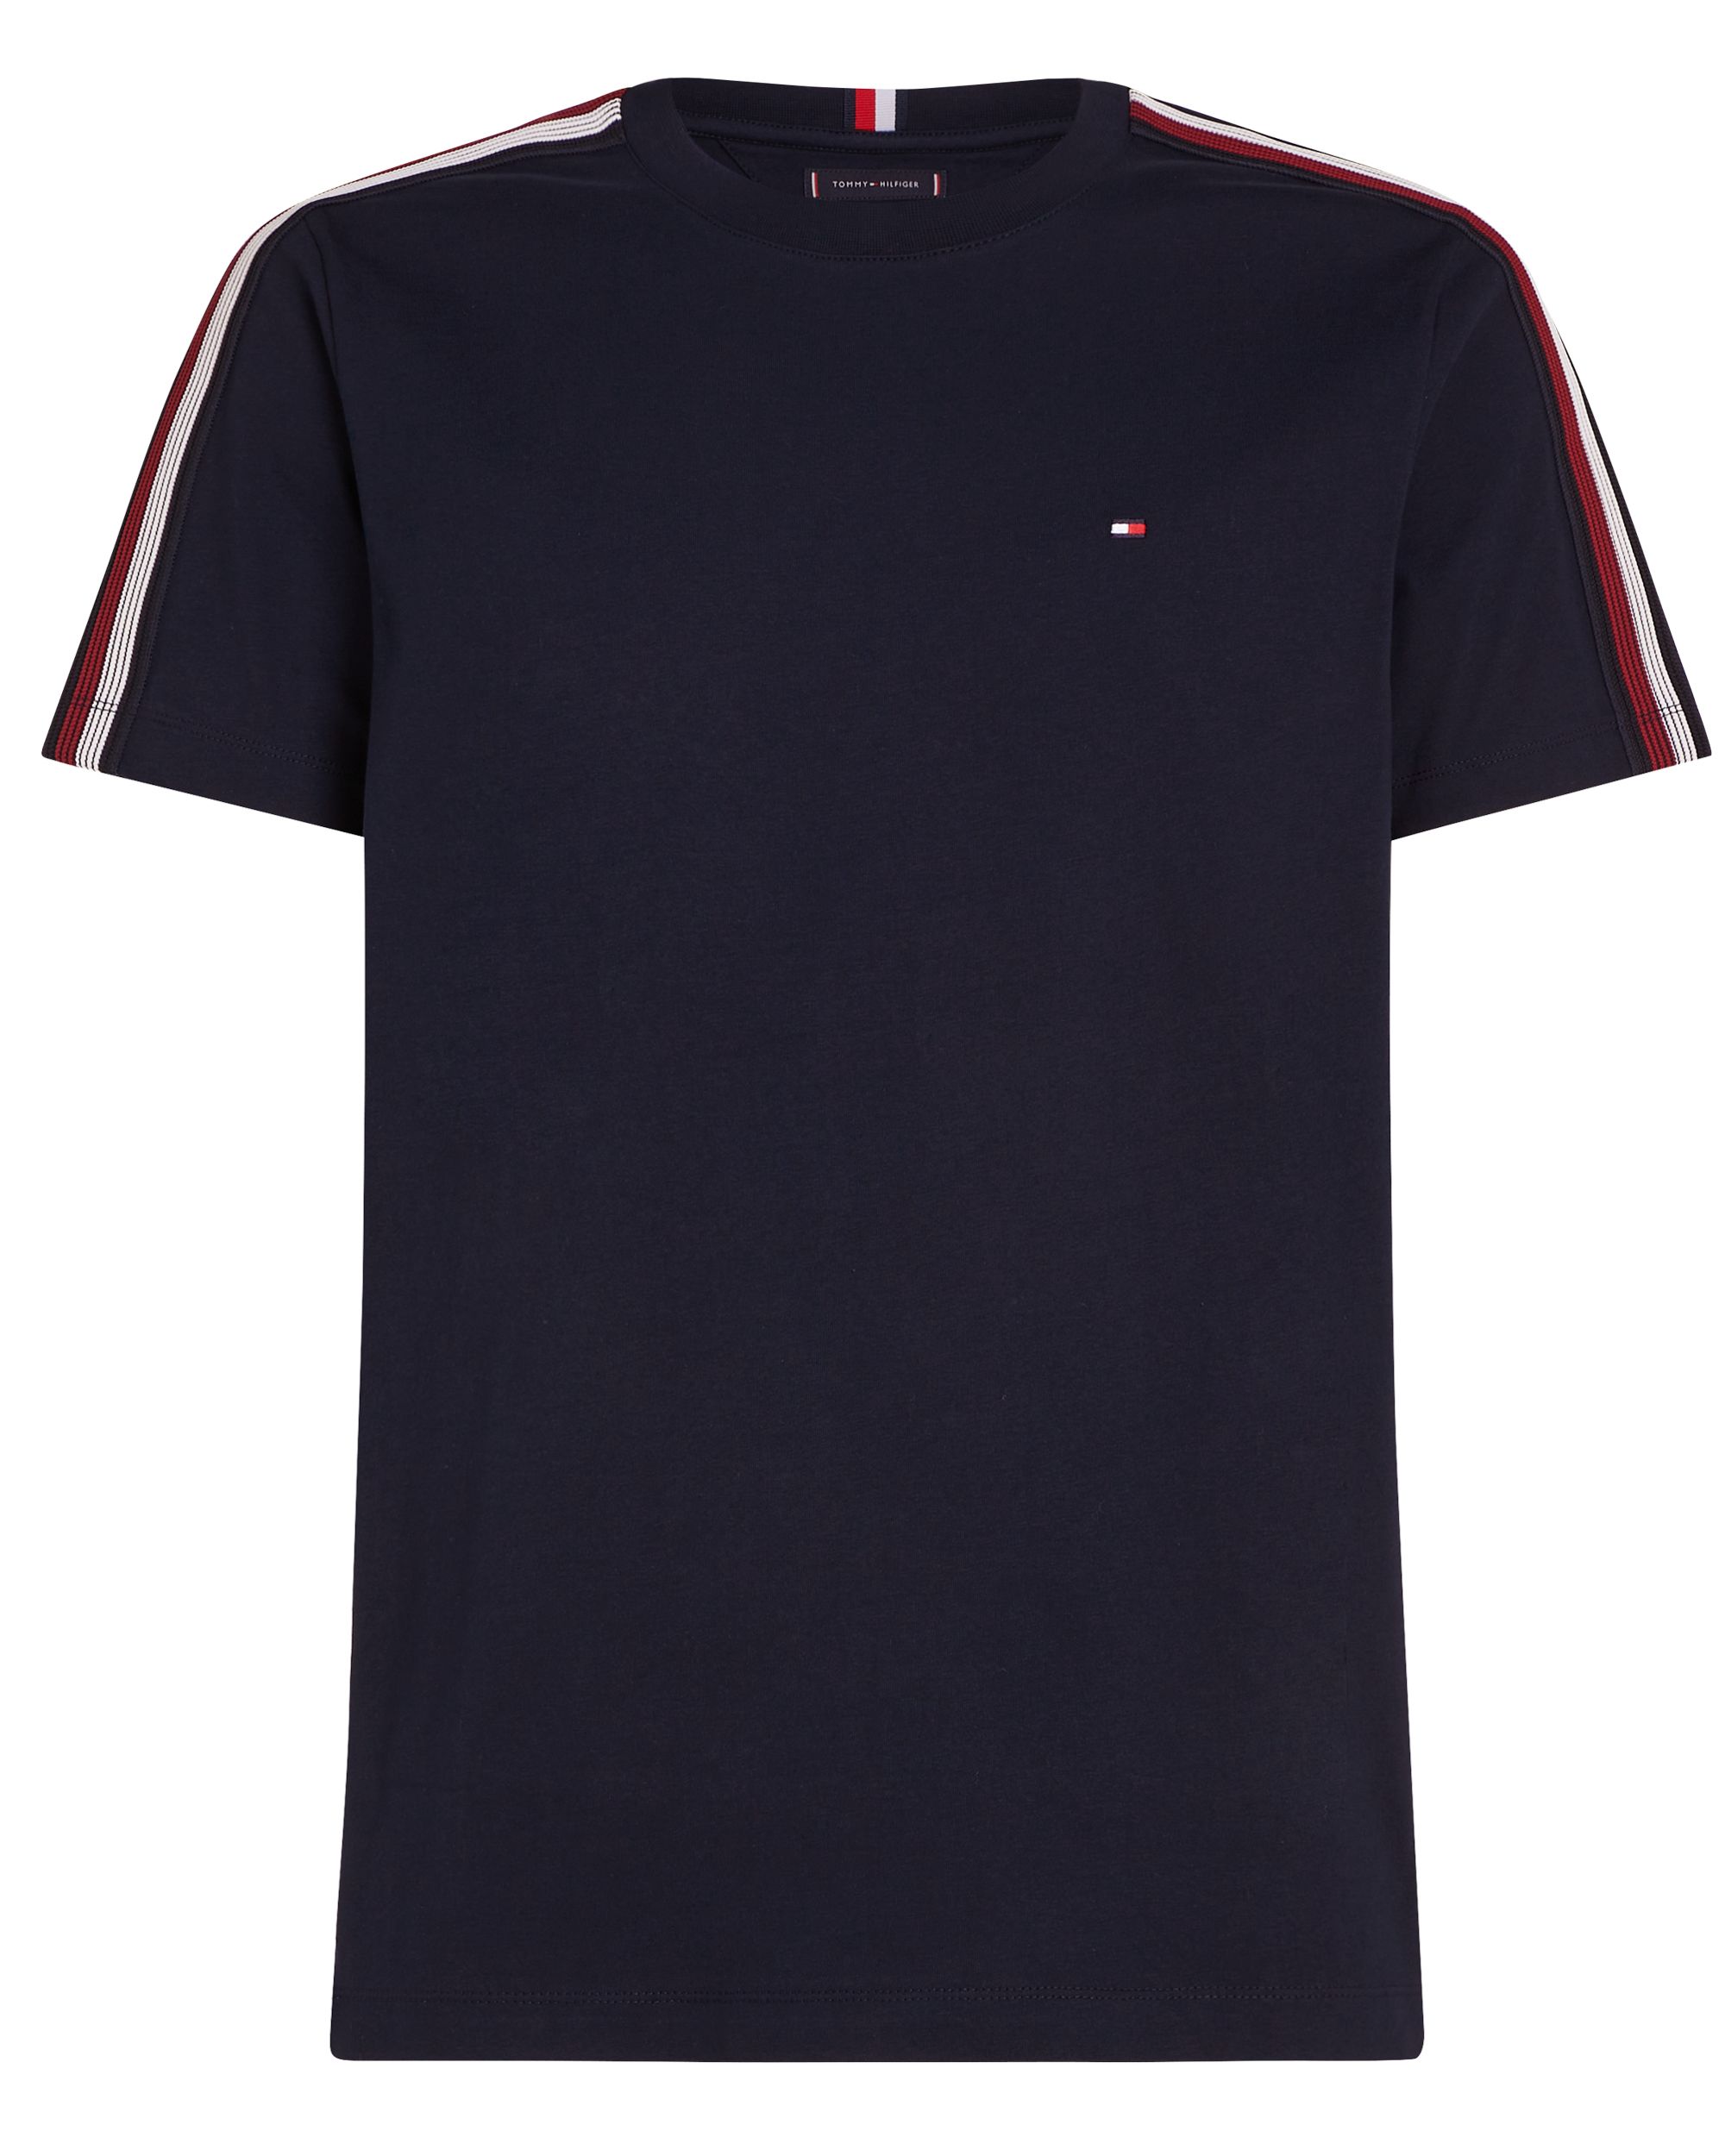 Tommy Hilfiger Menswear T-shirt KM Donker grijs 095627-001-L